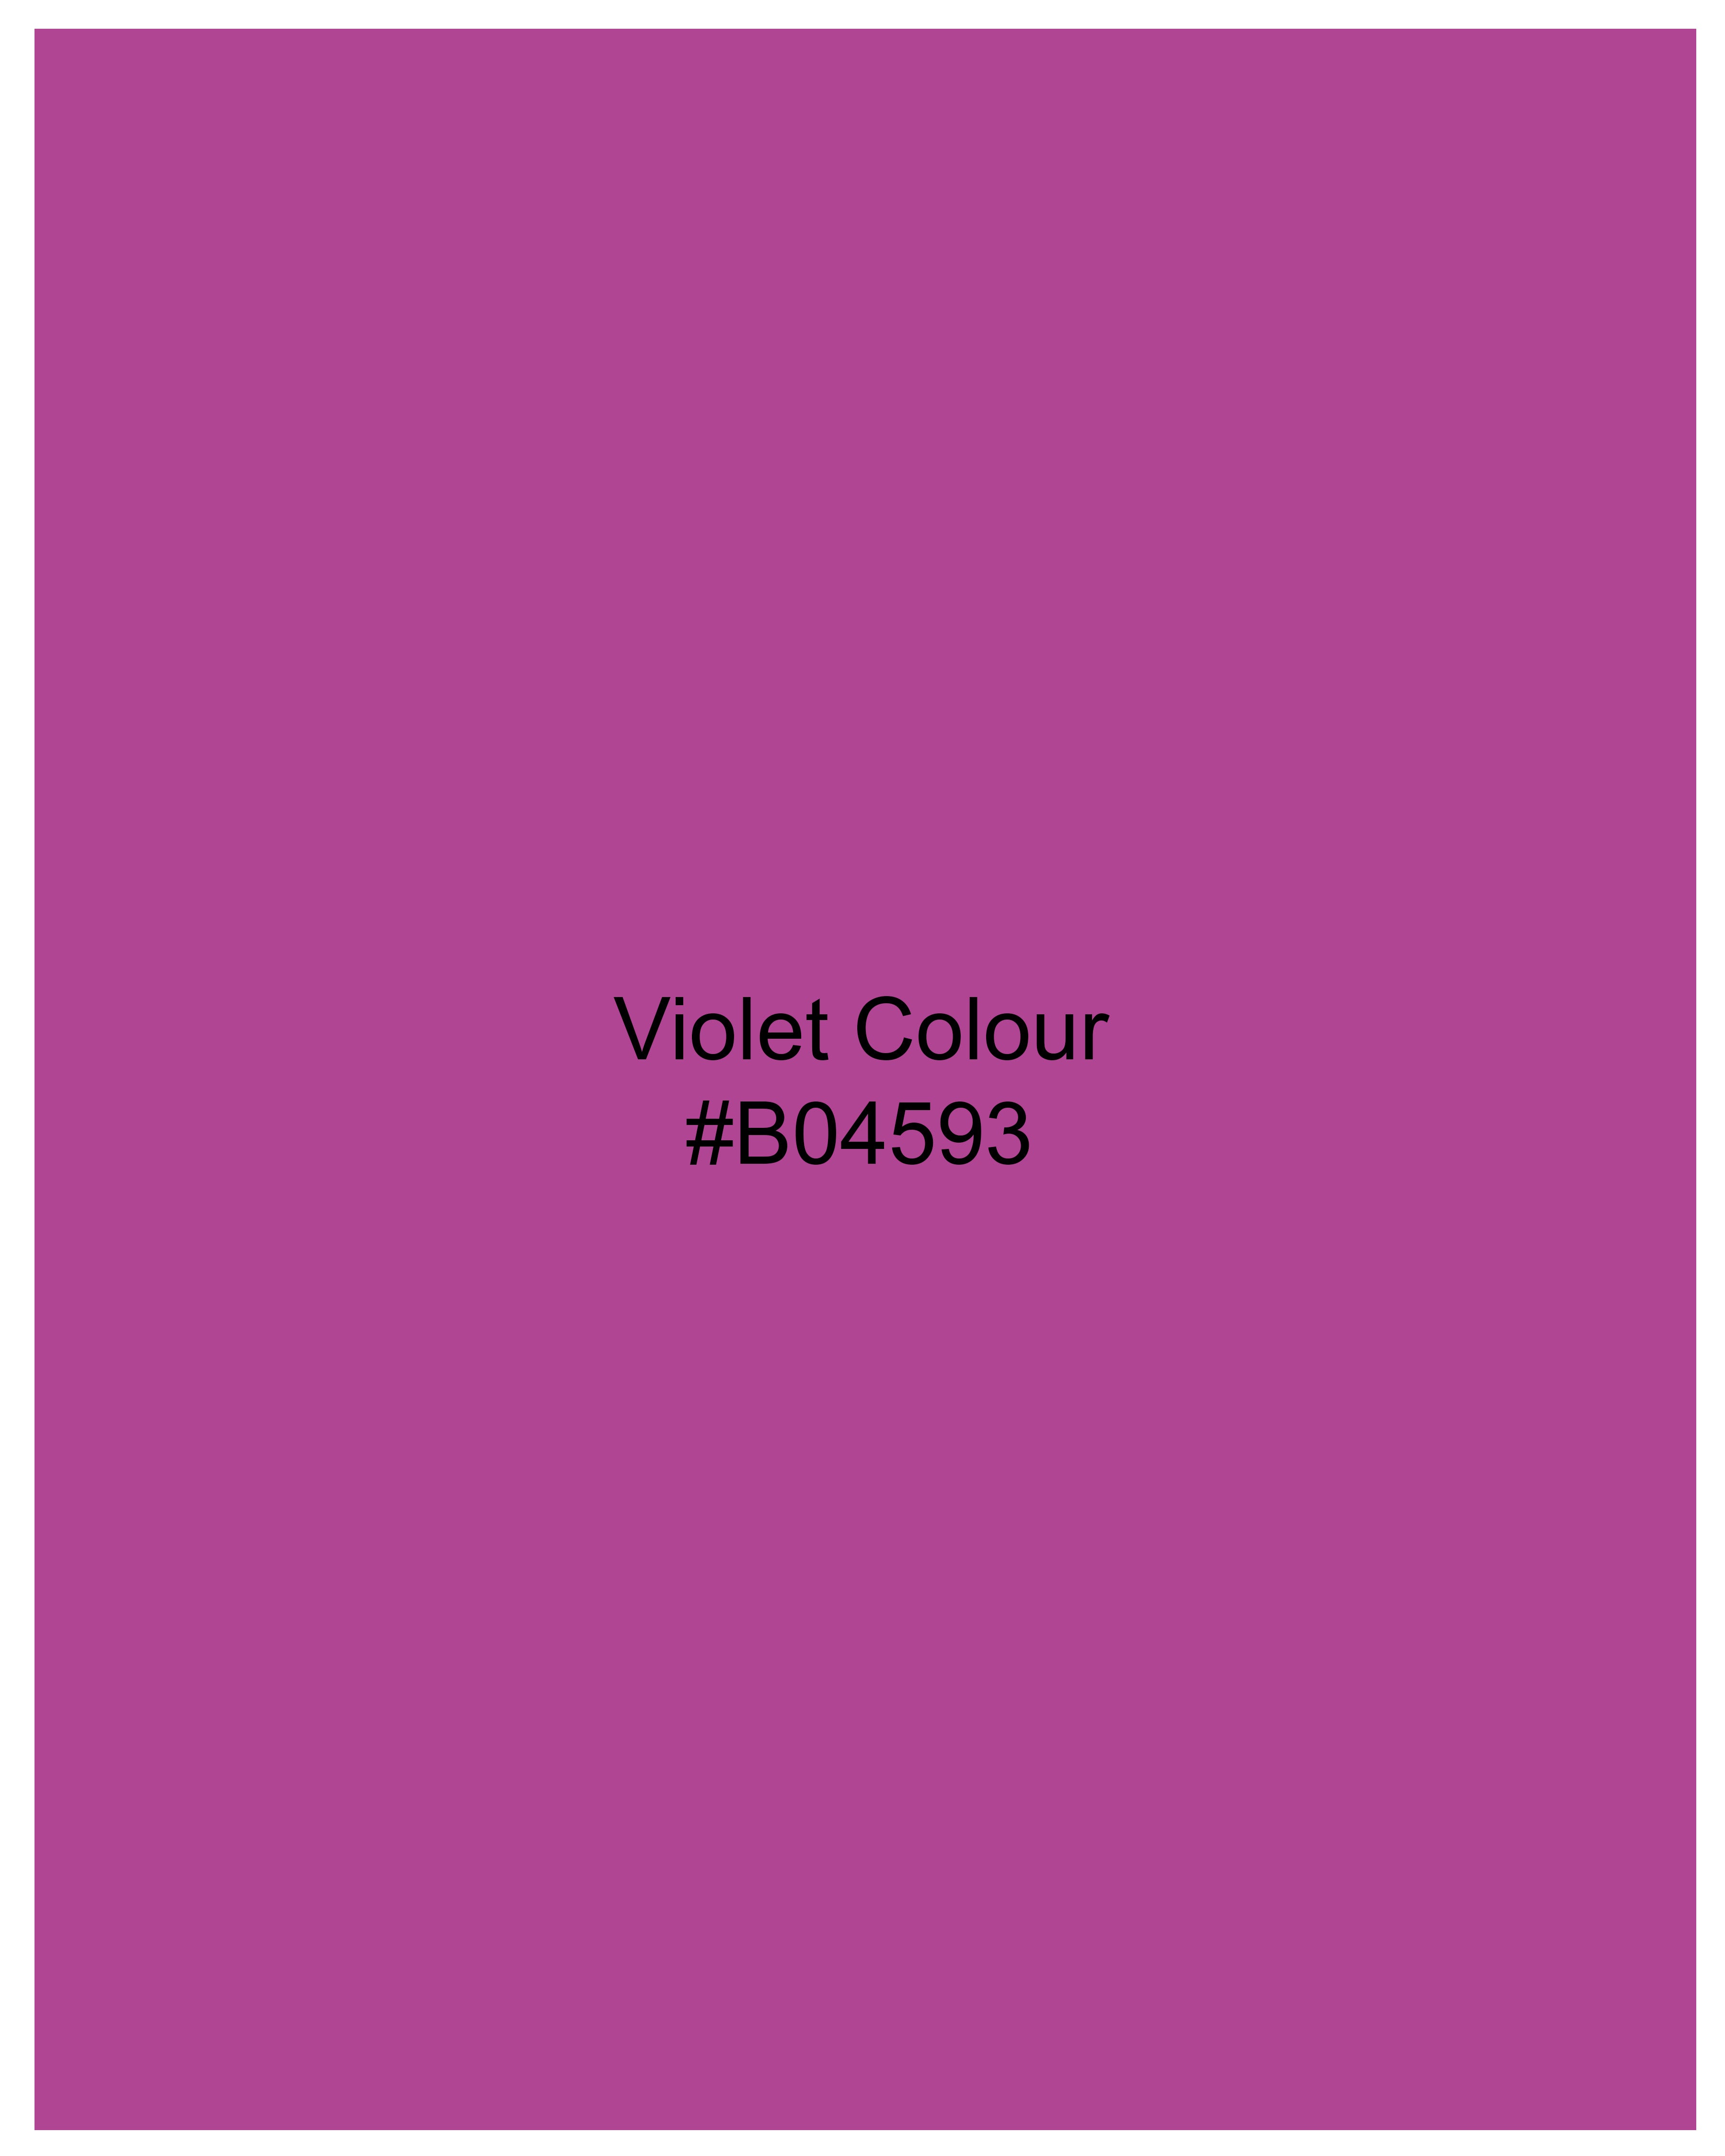 Violet Two Tone Chambray Shirt 10014-38, 10014-H-38, 10014-39, 10014-H-39, 10014-40, 10014-H-40, 10014-42, 10014-H-42, 10014-44, 10014-H-44, 10014-46, 10014-H-46, 10014-48, 10014-H-48, 10014-50, 10014-H-50, 10014-52, 10014-H-52